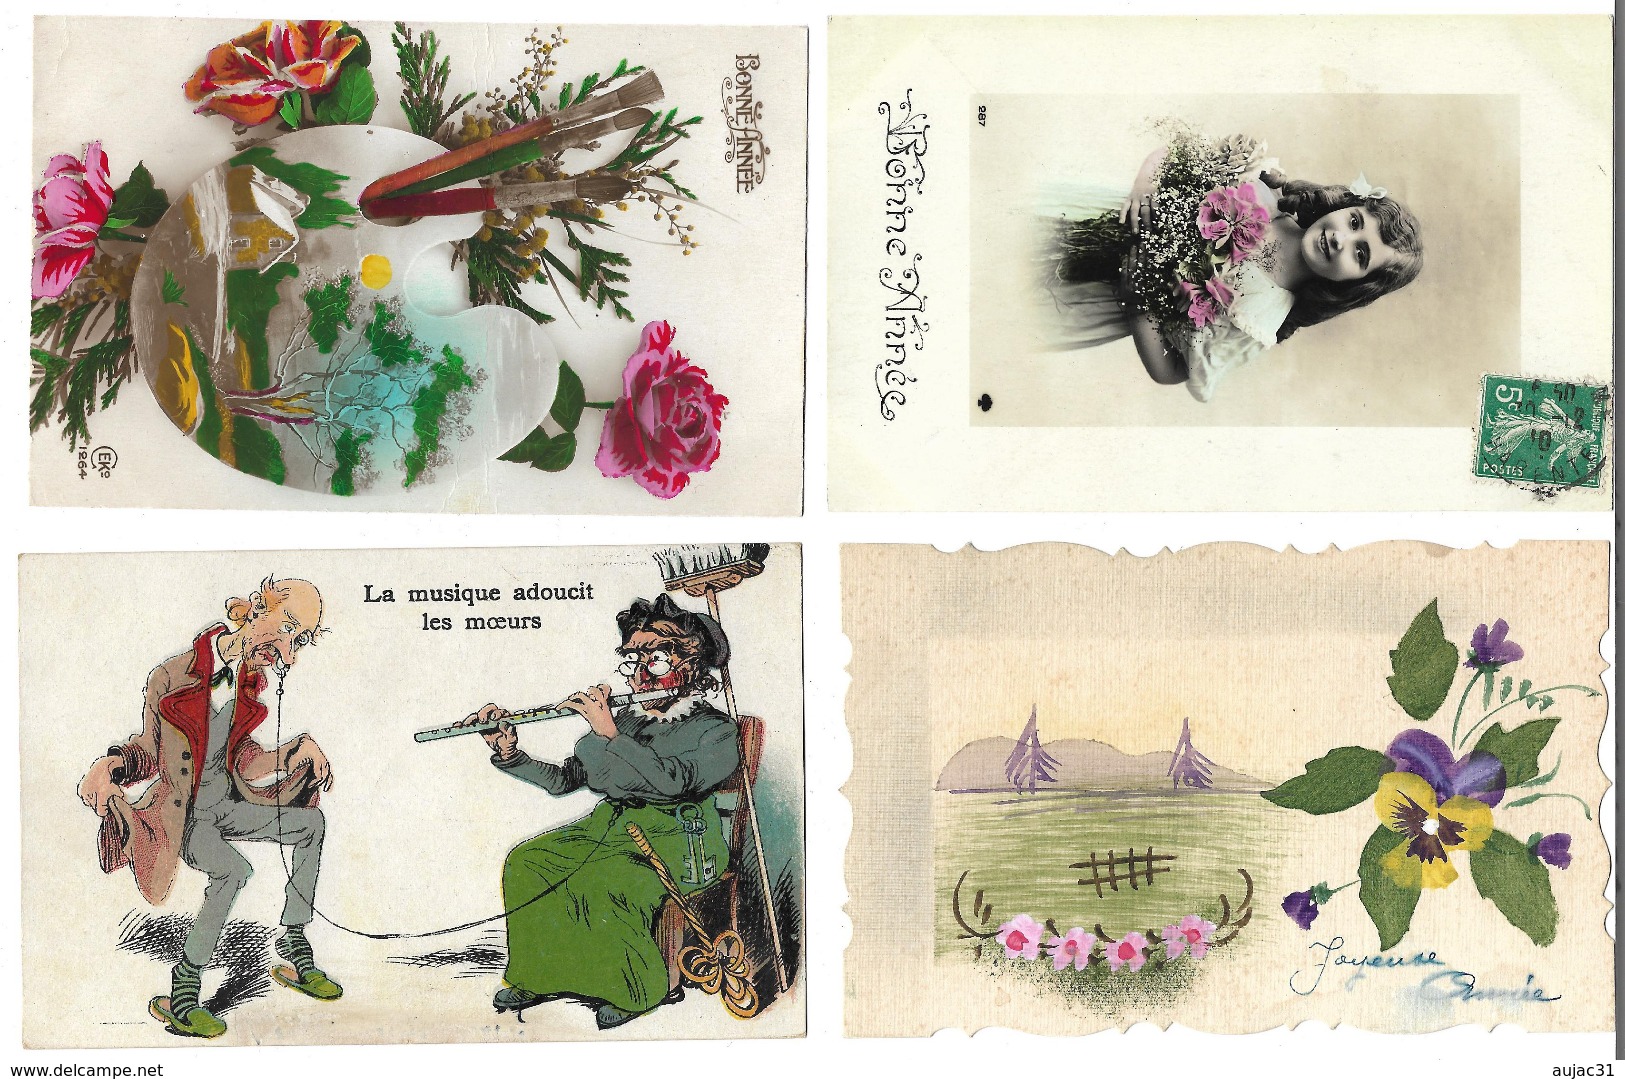 Fantaisies divers - Lot de 100 cartes - 1er avril - Noël - Enfants - Femmes - Fleurs - Couples - Pâques - 1 série - etc